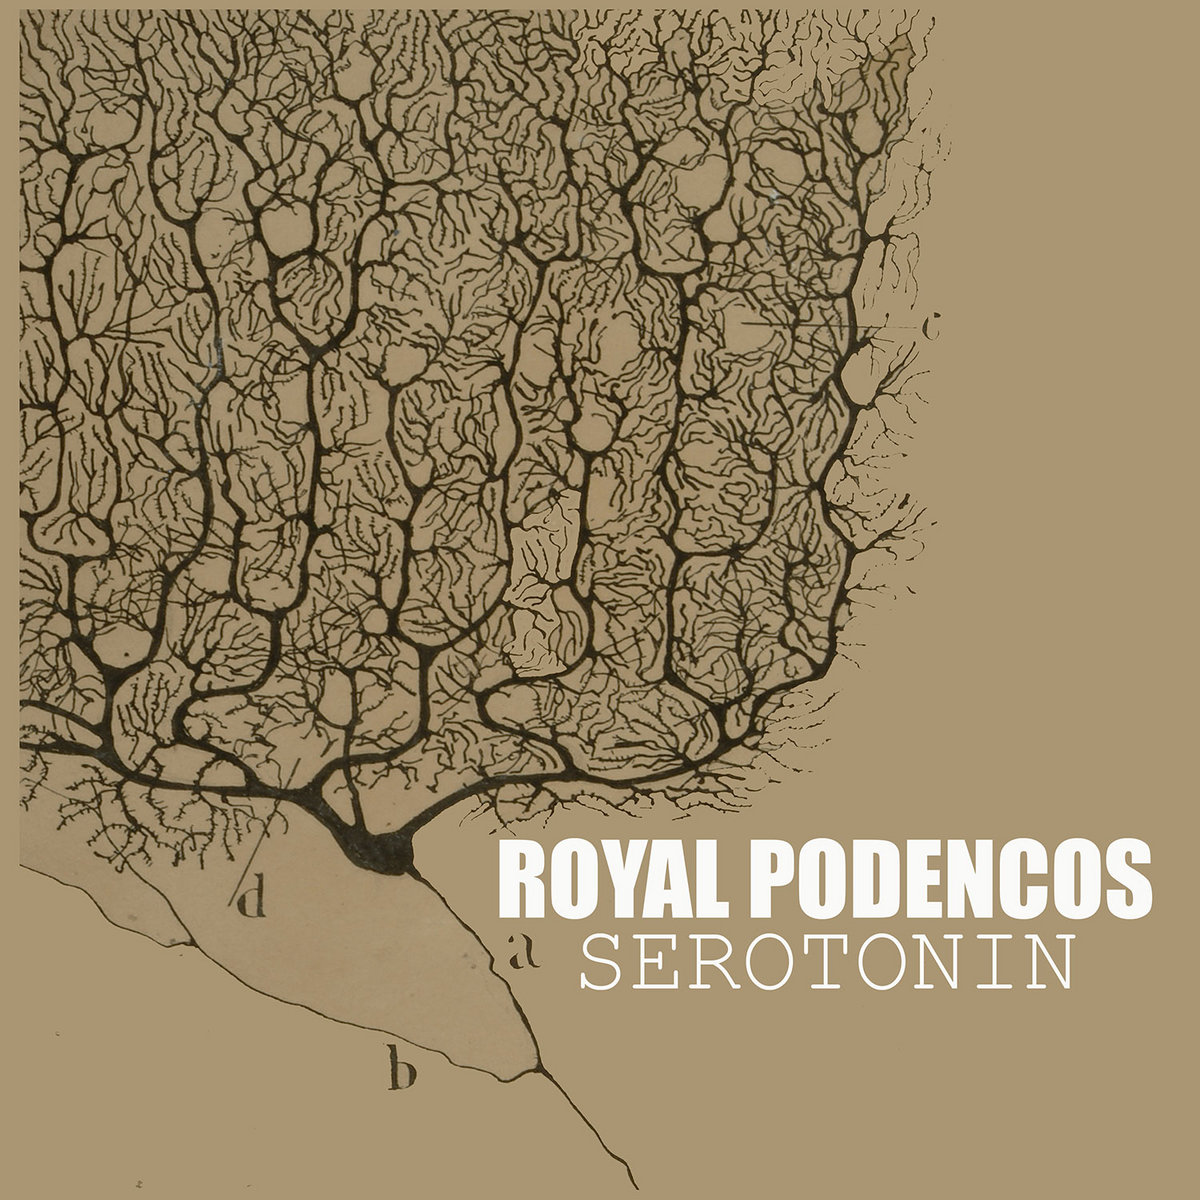 Royal Podencos, álbum Serotonin